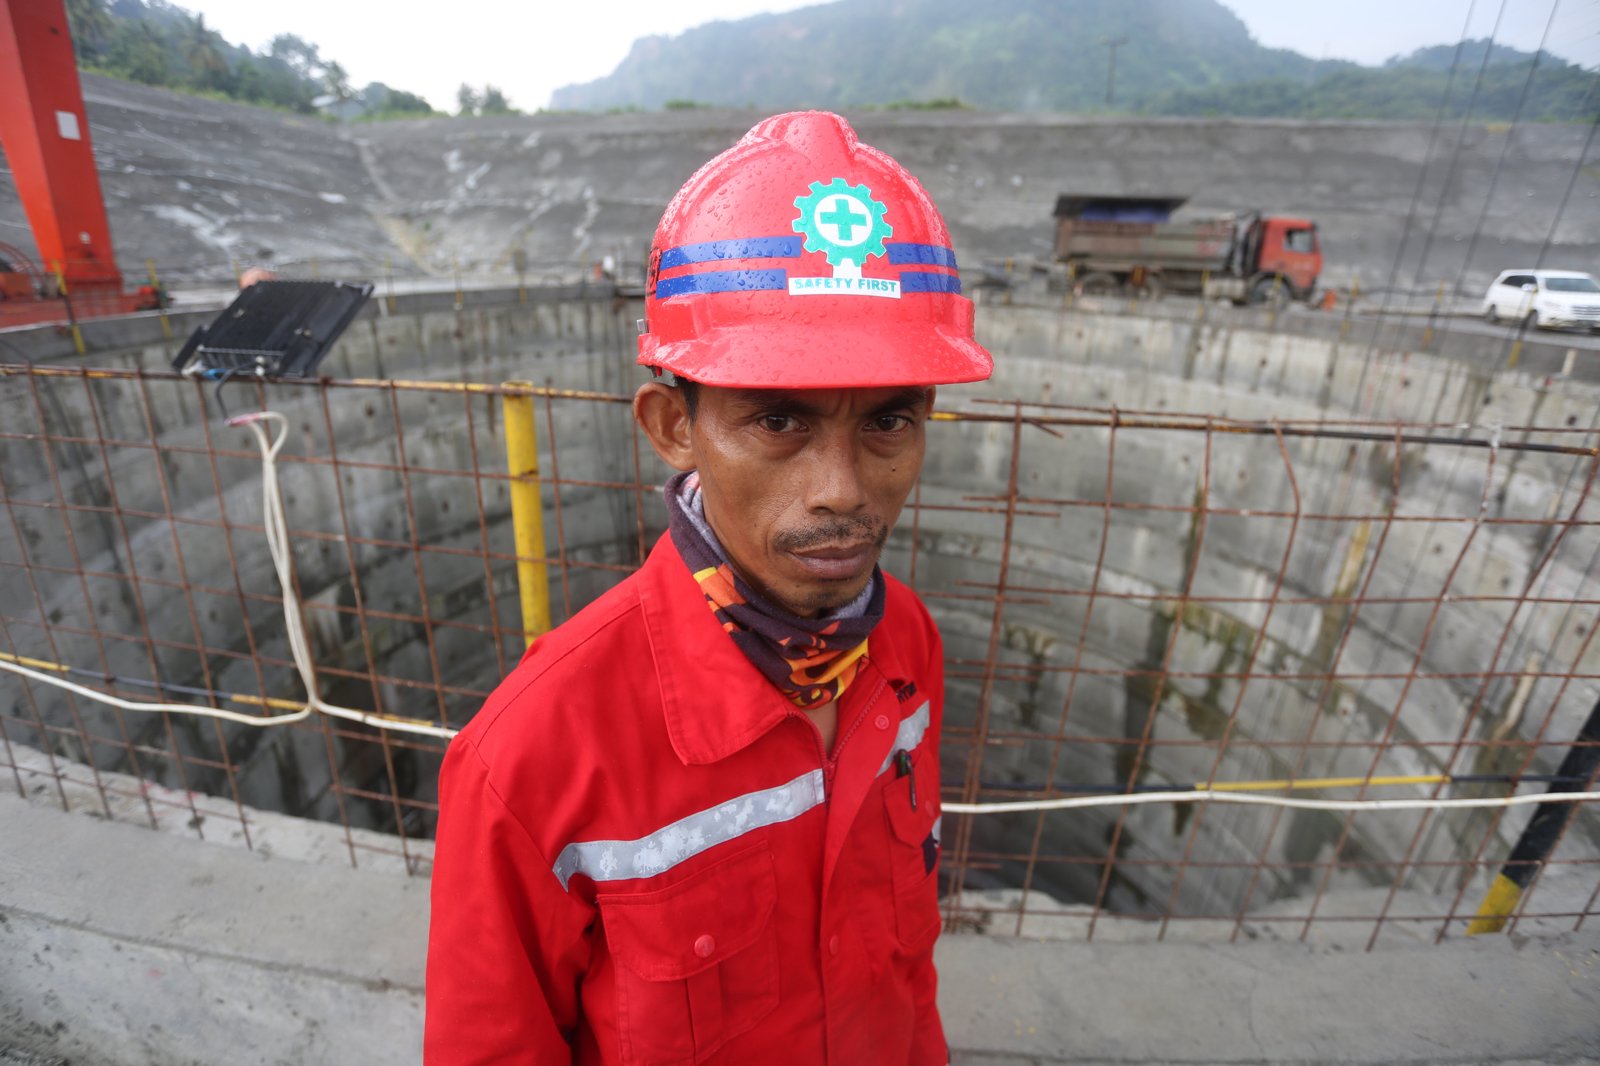 Khekhes (45 tahun), warga Kadipaten yang bekerja di area Power House proyek PLTA Jatigede di Sumedang, Jawa Barat, Kamis (6/4).